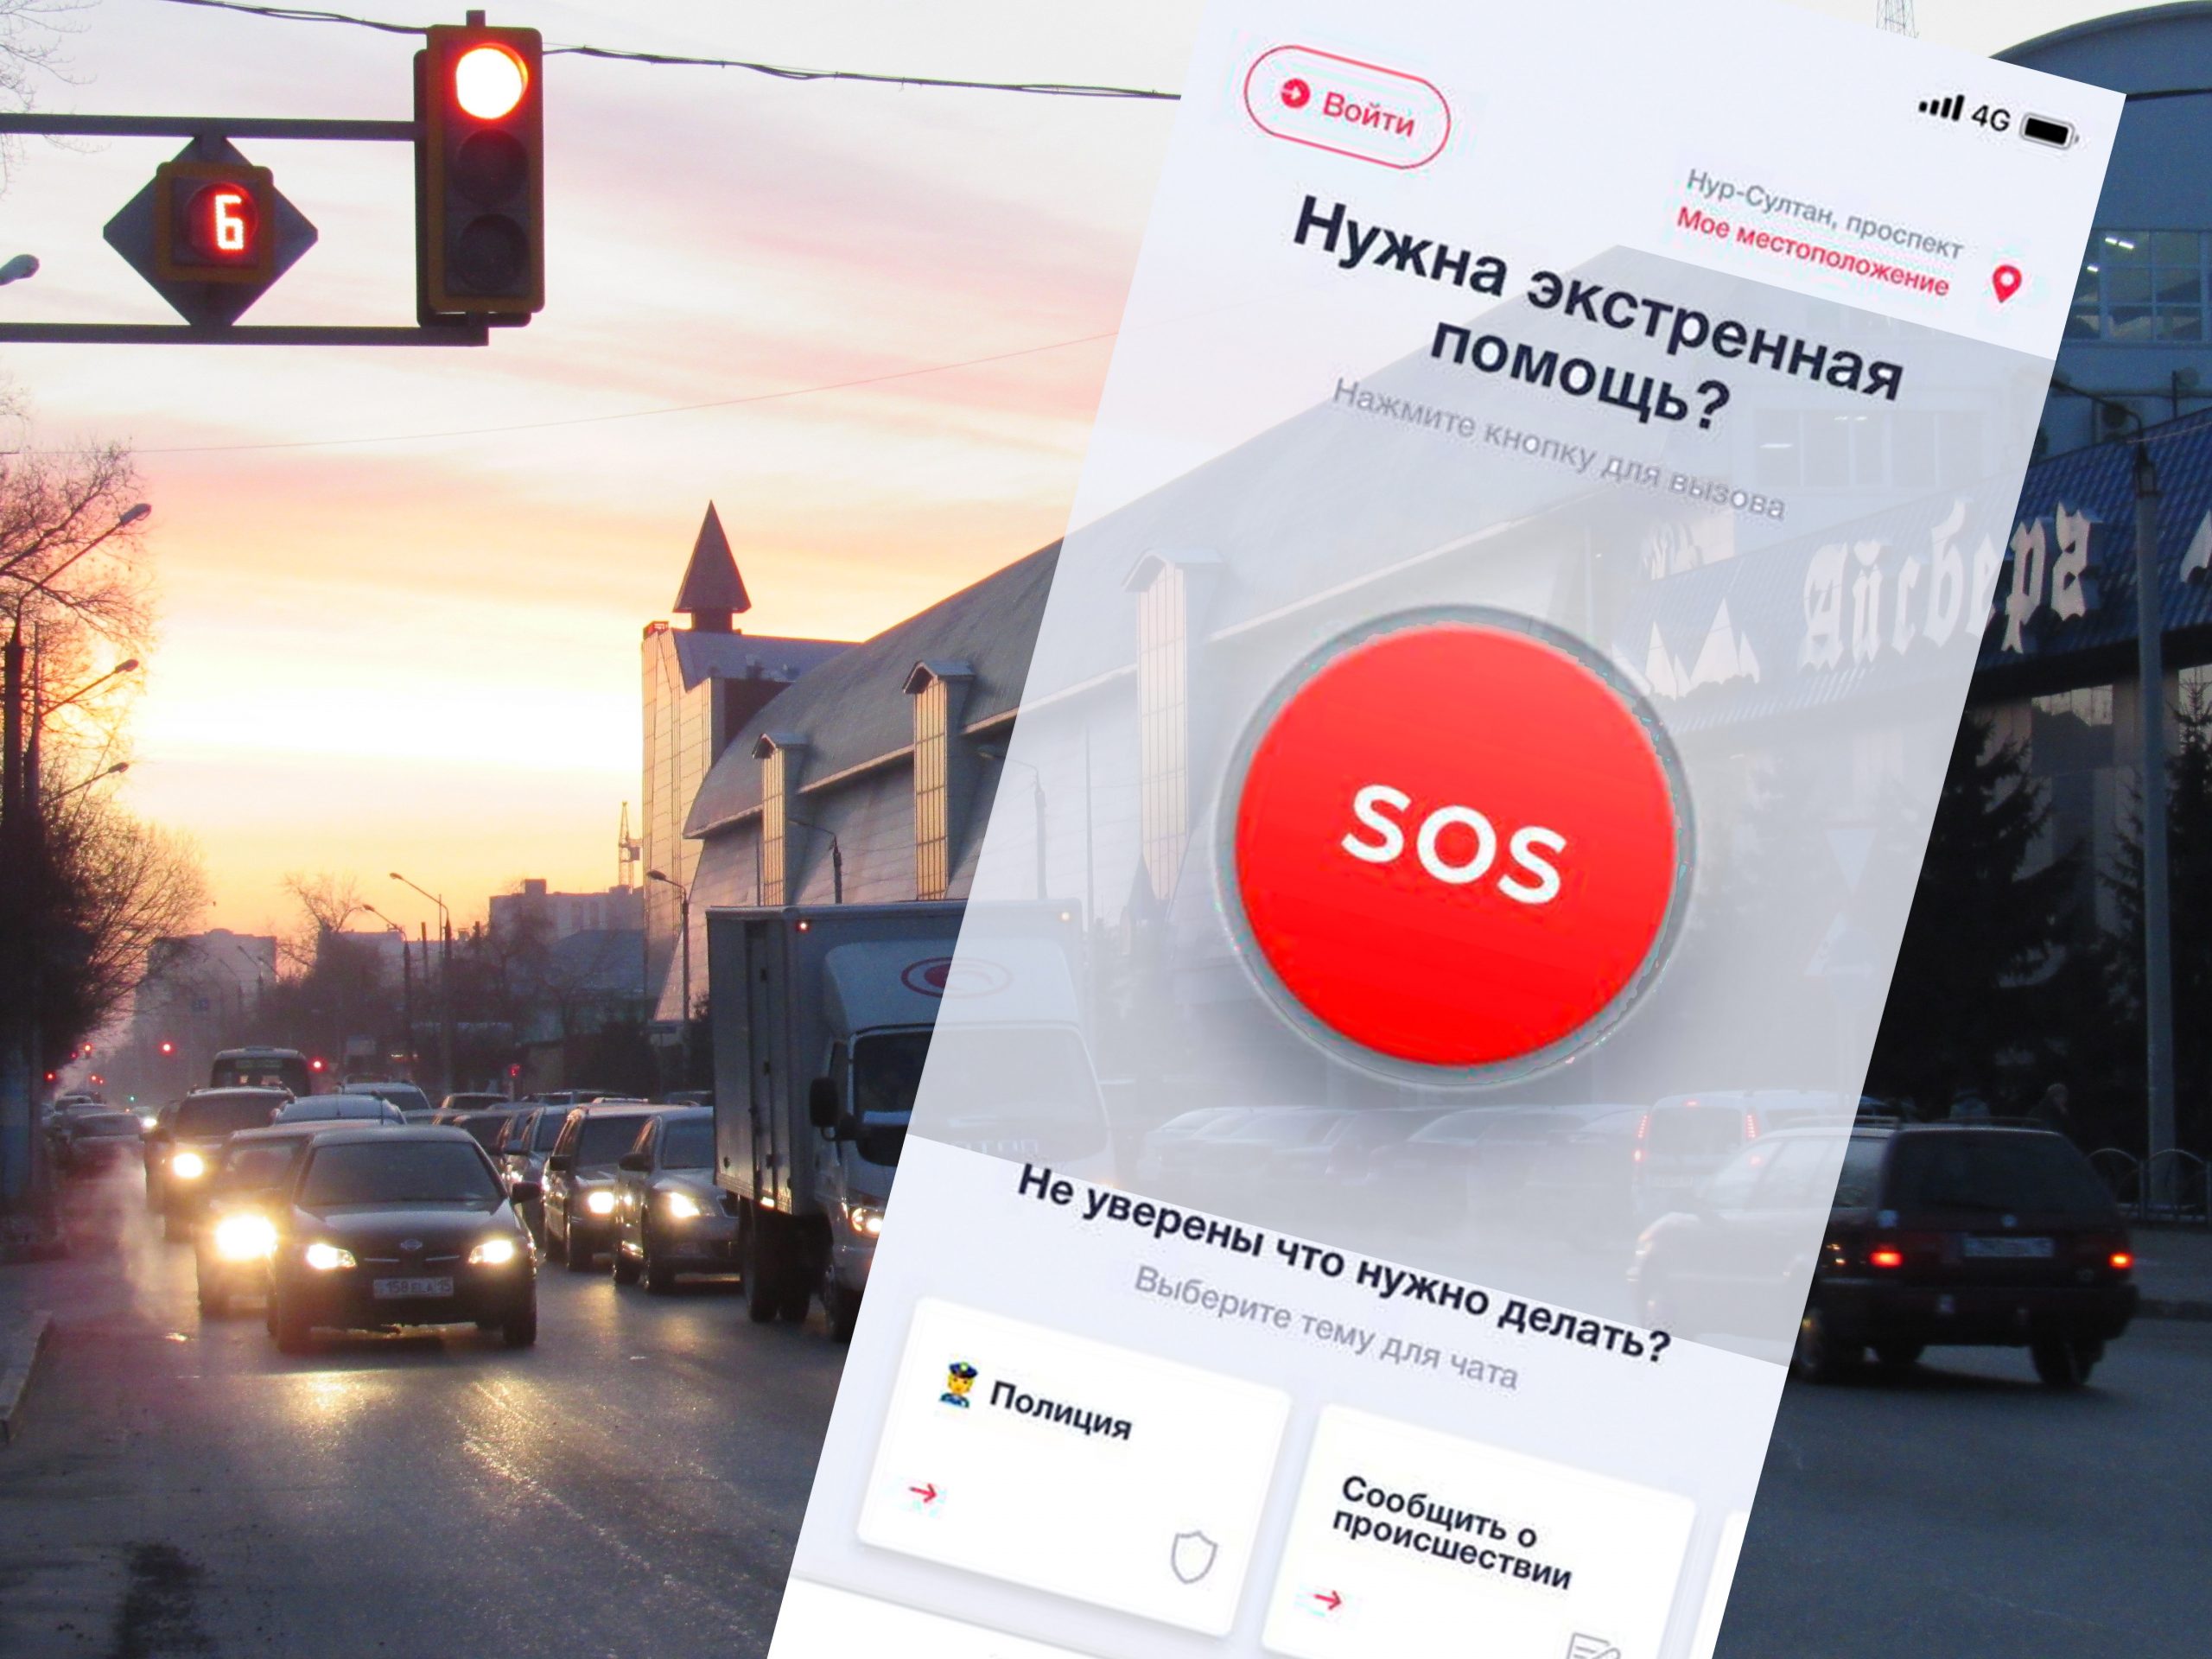 Полицейскую «Красную кнопку» могут установить на смартфоны жители Петропавловска